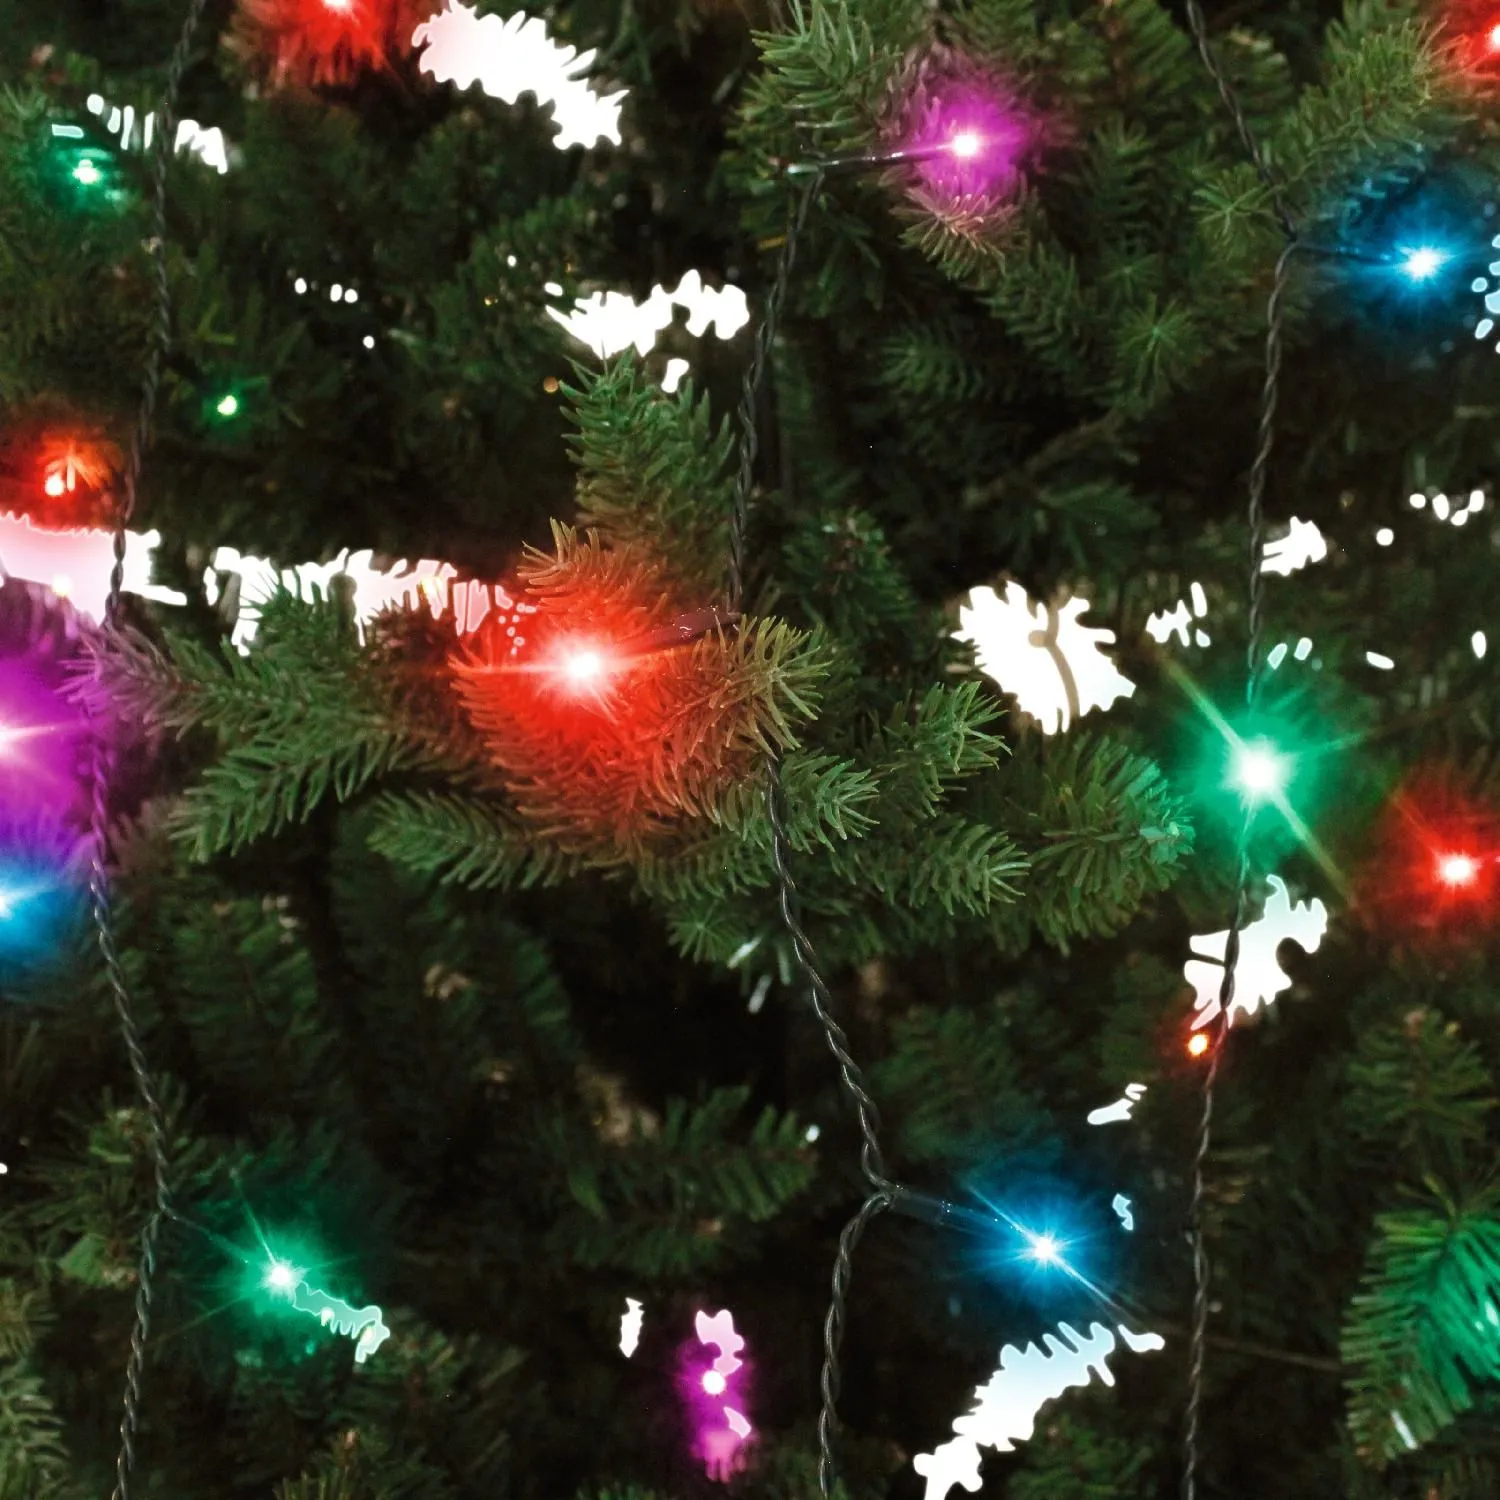 Smart Home Weihnachtsbaum-Lichterkette, bunt (RGB)